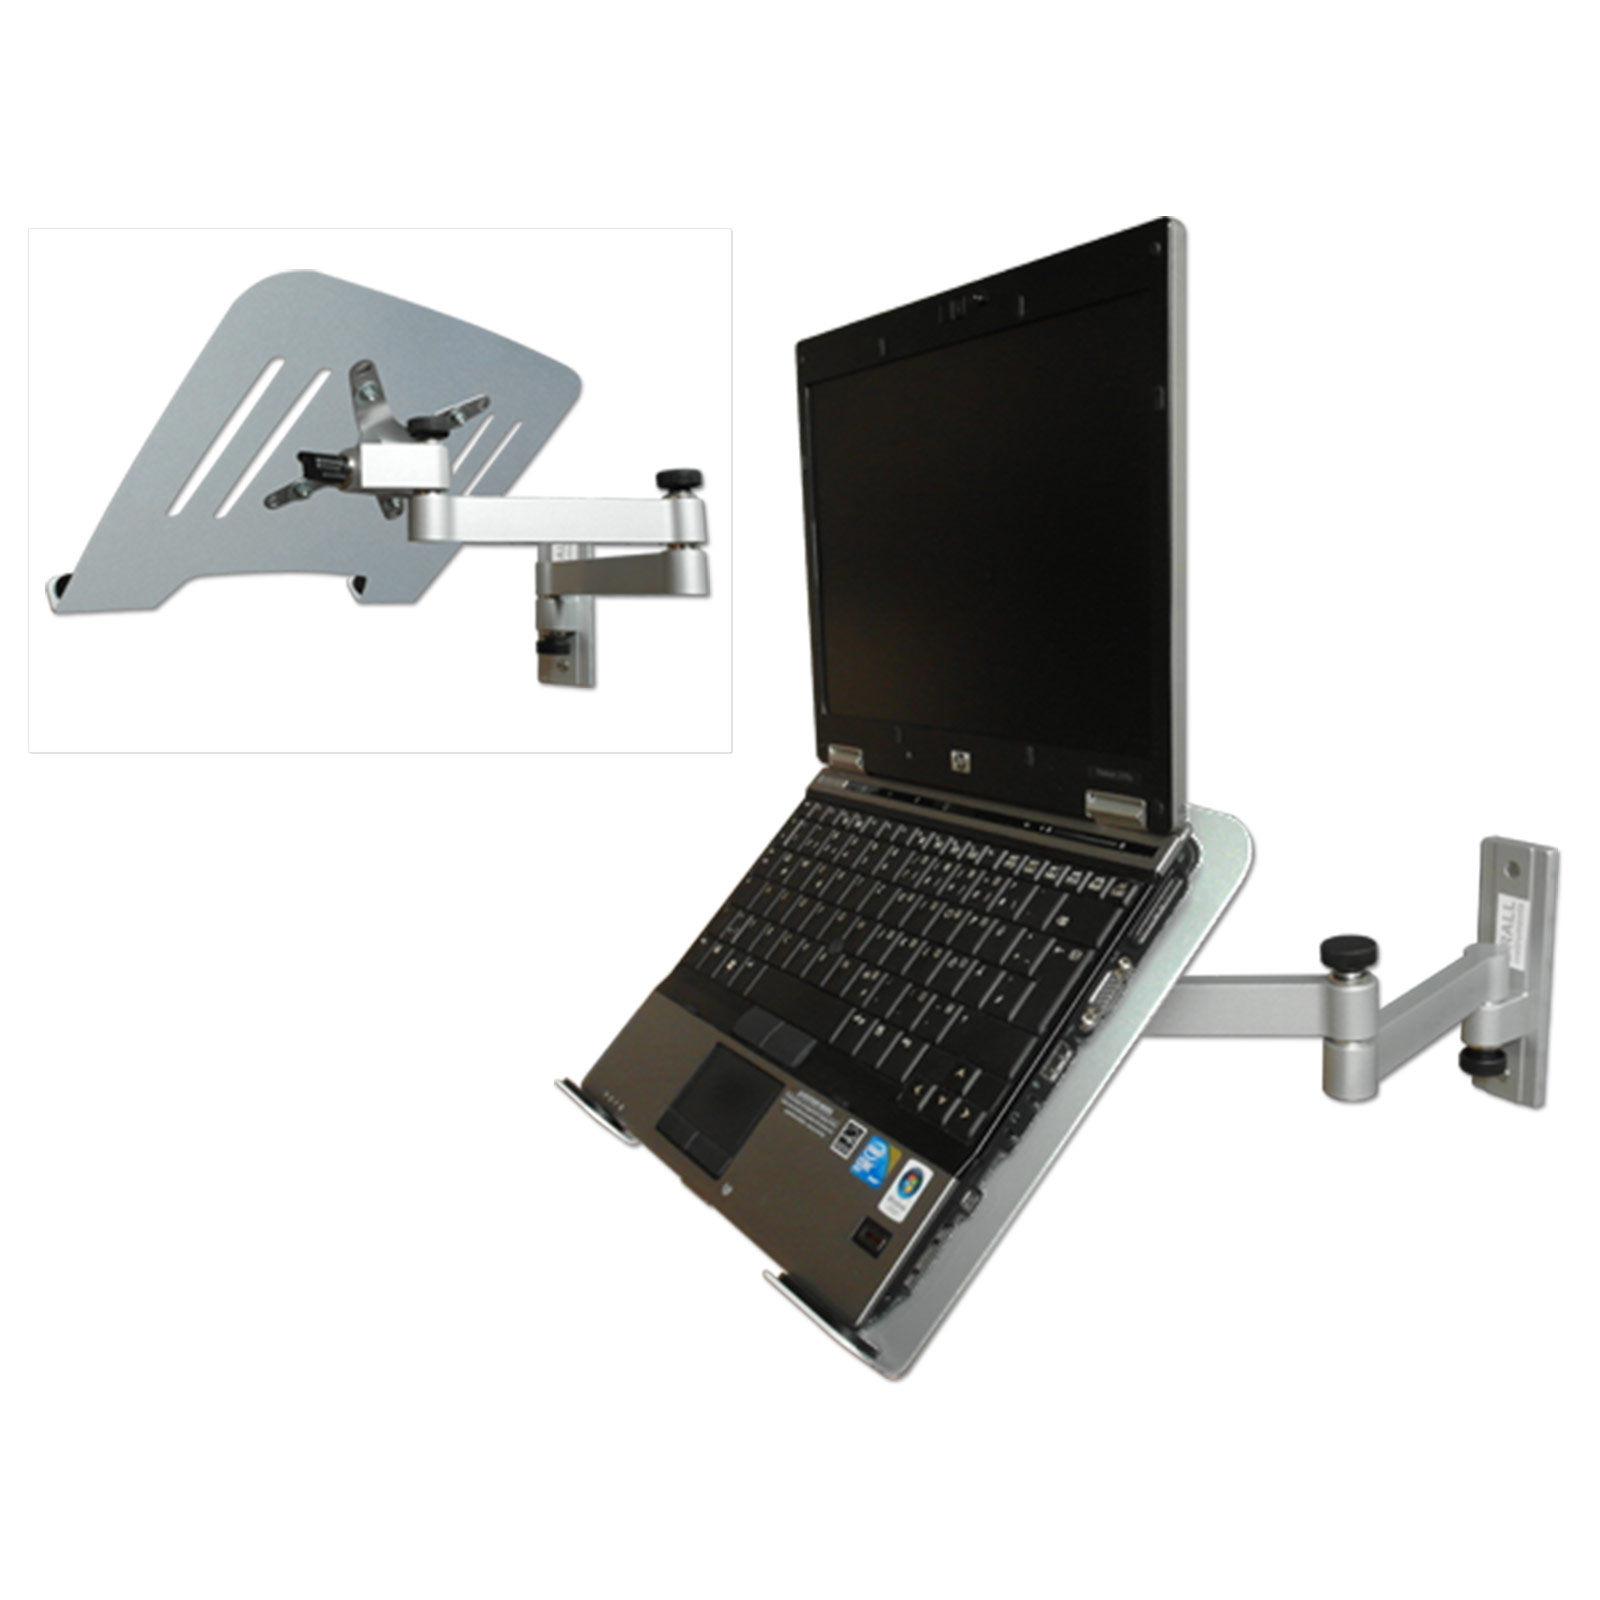 Wandhalterung Notebook silber Laptop Halterung L52S-IP3S silber Ablage Adapterplatte Wandhalterung Modell: INSTRUMENTS mit DRALL